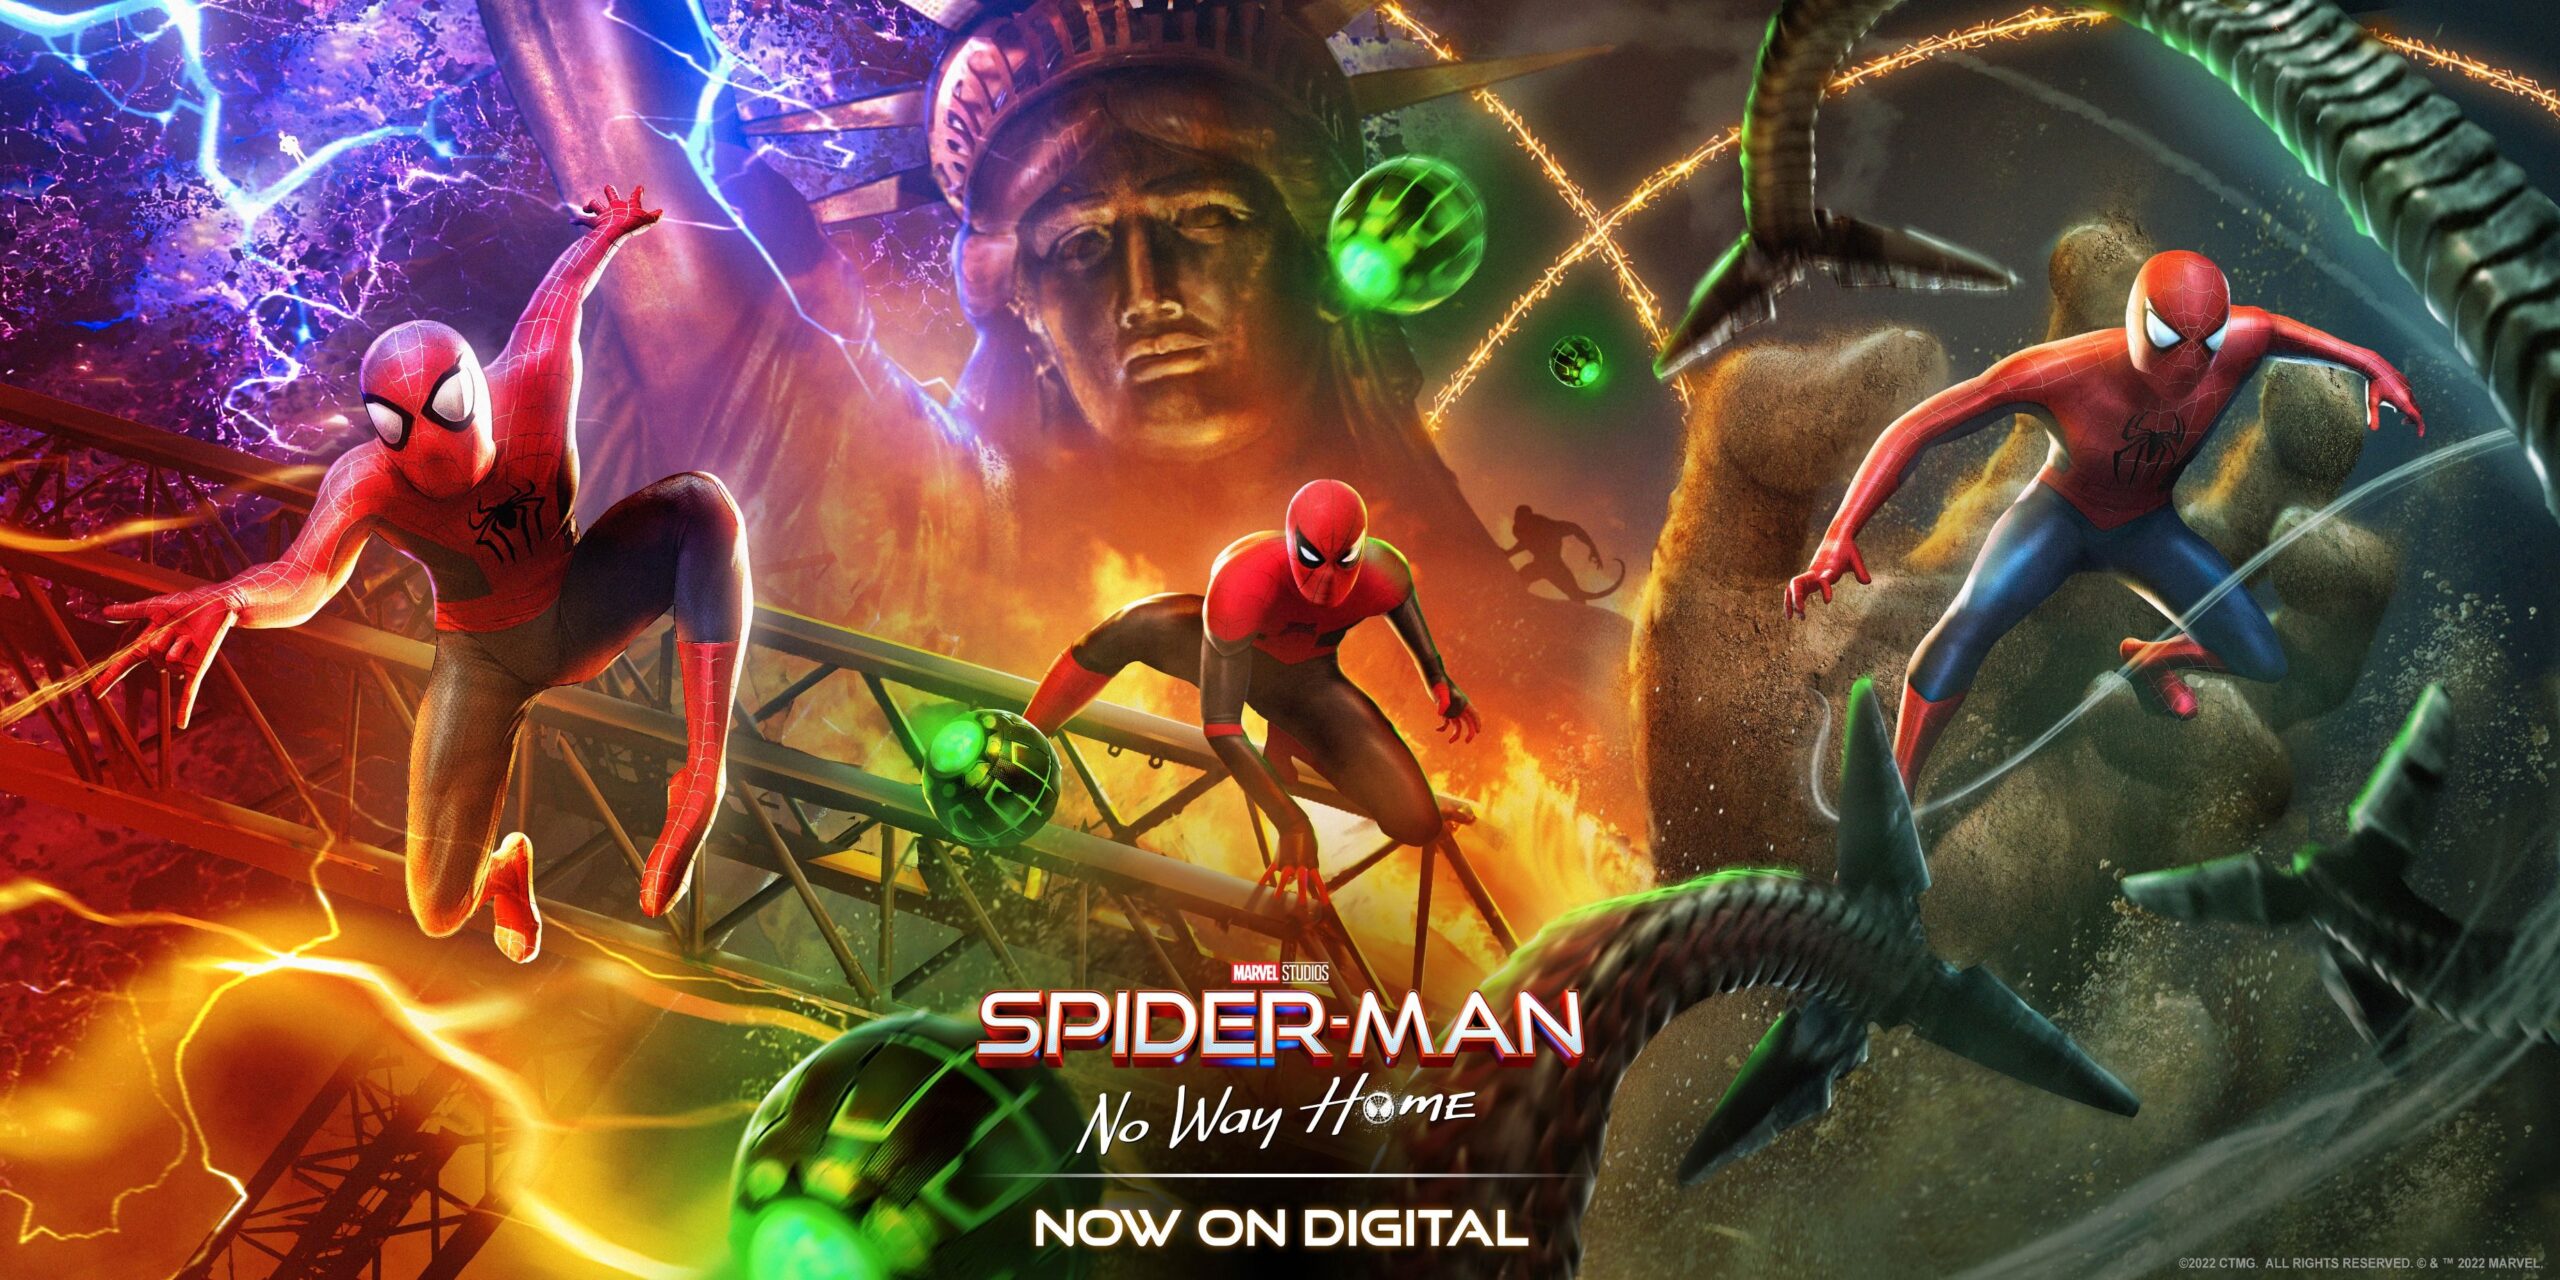 El lanzamiento digital de Spider-Man: No Way Home establece un récord con $ 42 millones en la primera semana